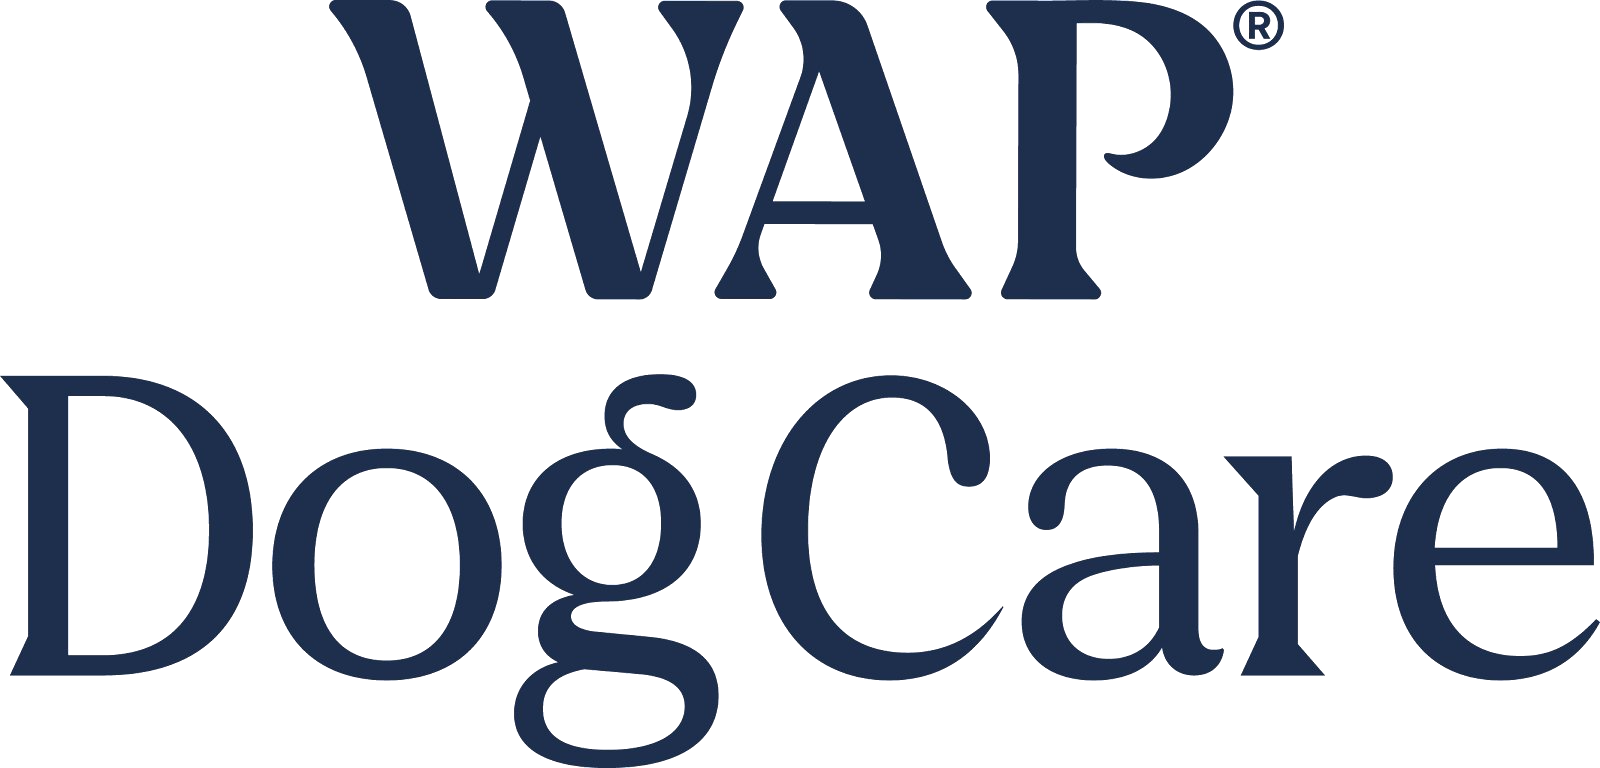 WAP-Dog-Care_logo